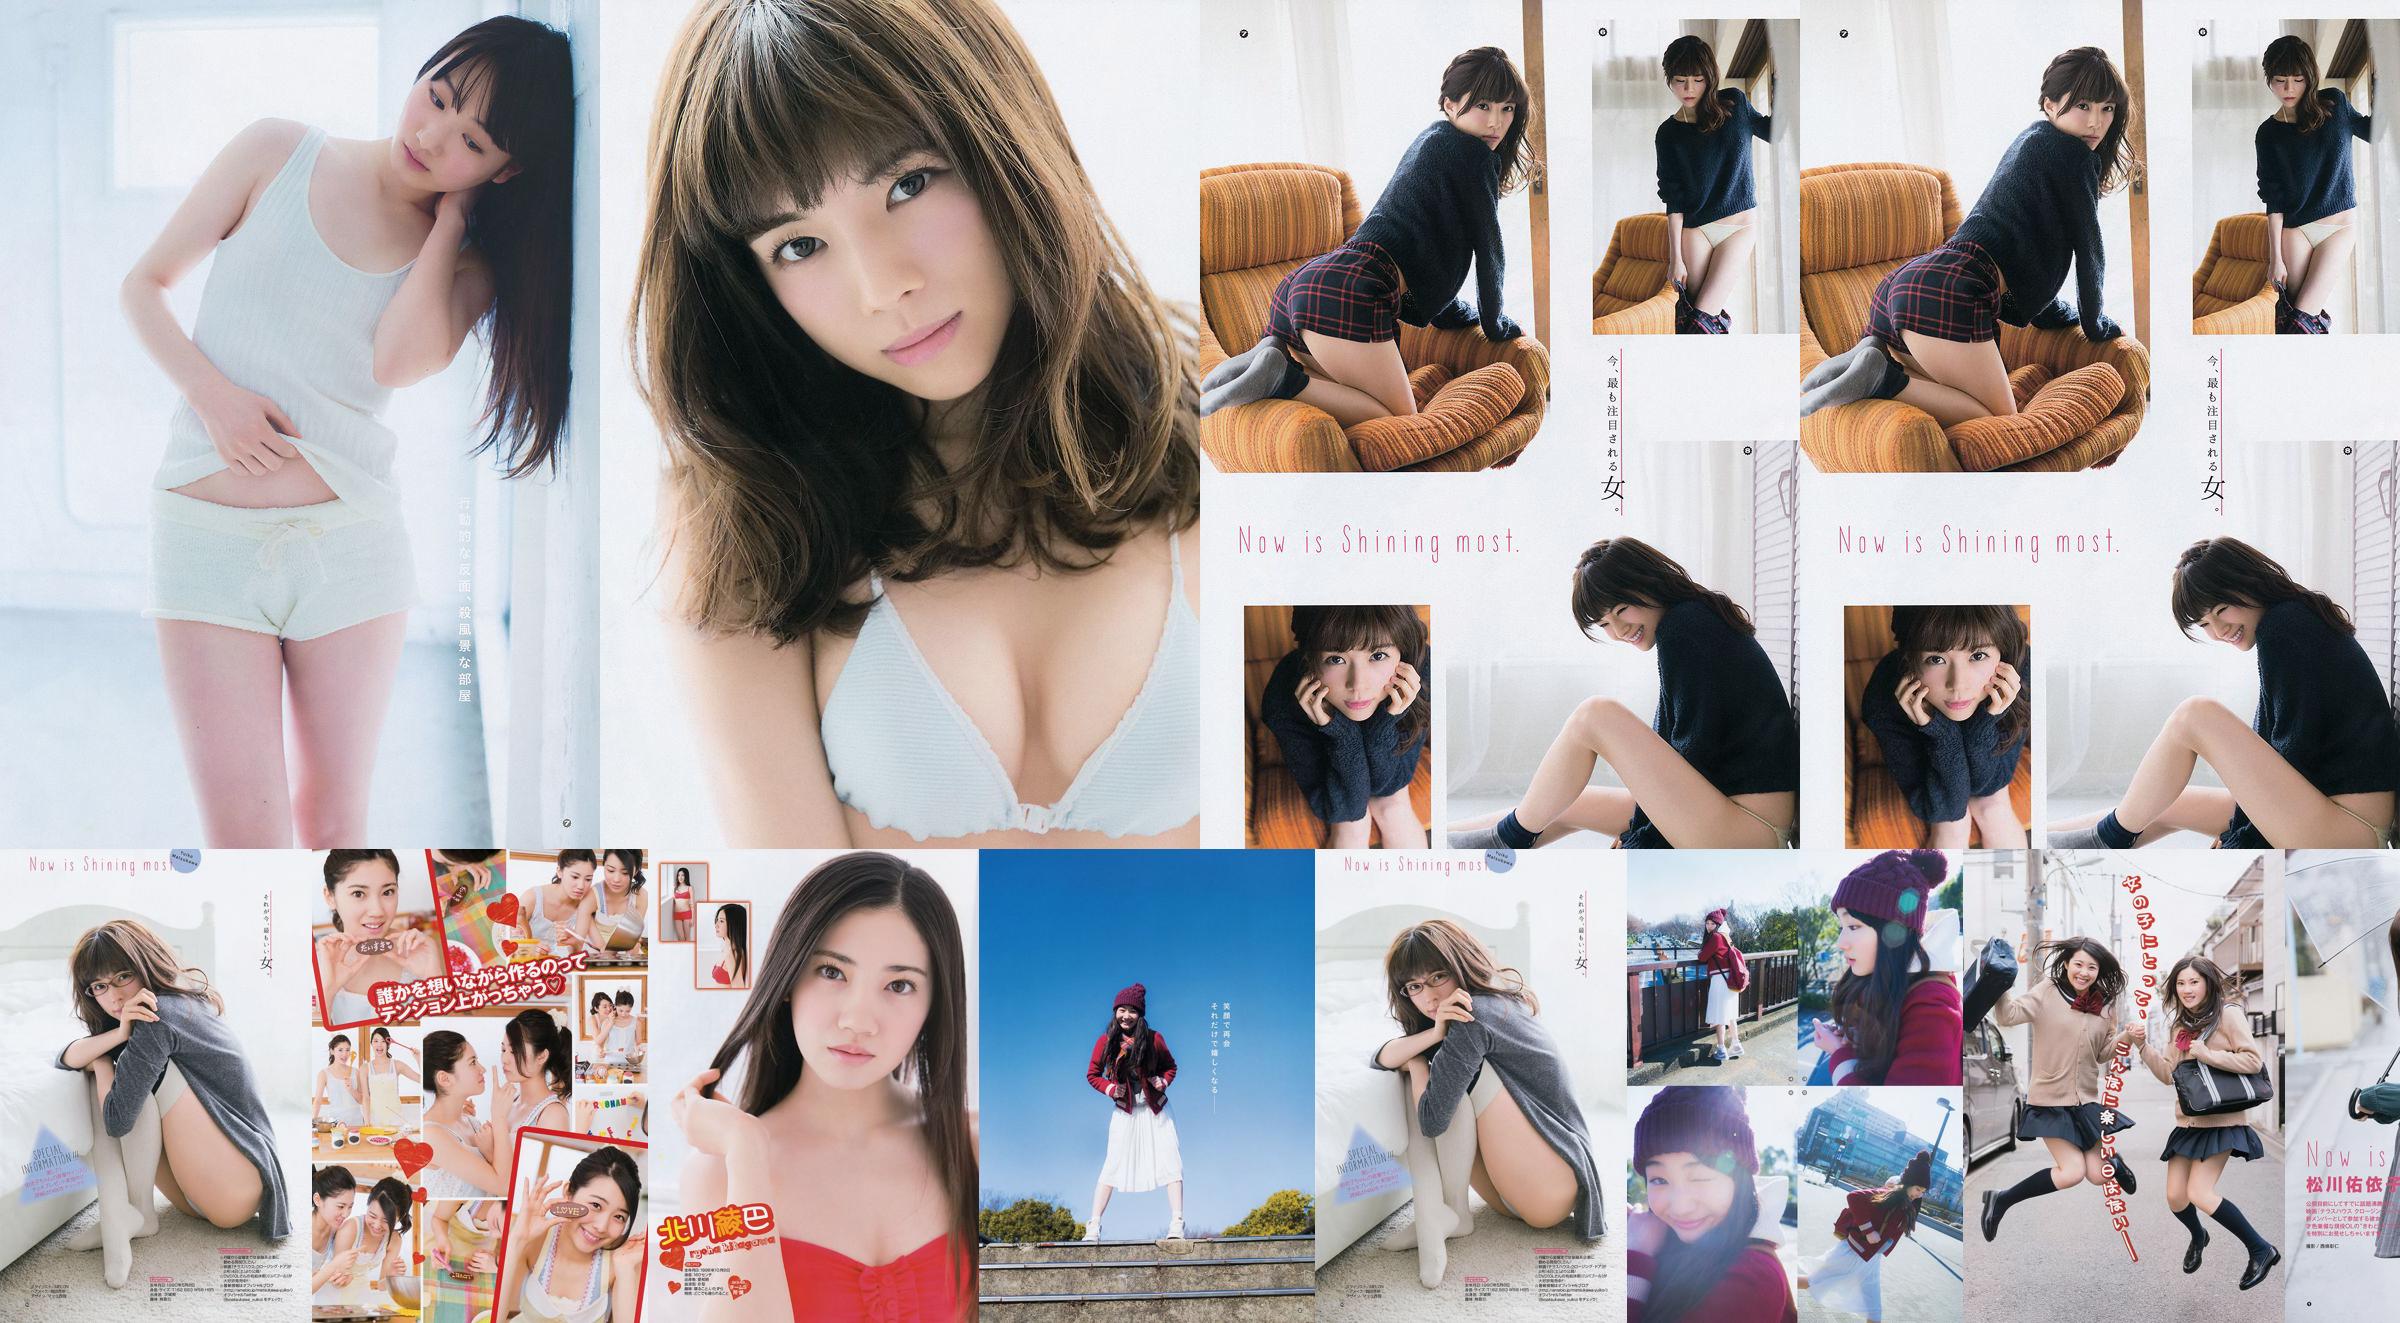 [Young Gangan] Ryoha Kitagawa Ami Miyamae Yuiko Matsukawa Narumi Akizuki 2015 Fotografia No.04 No.e7f48b Página 4